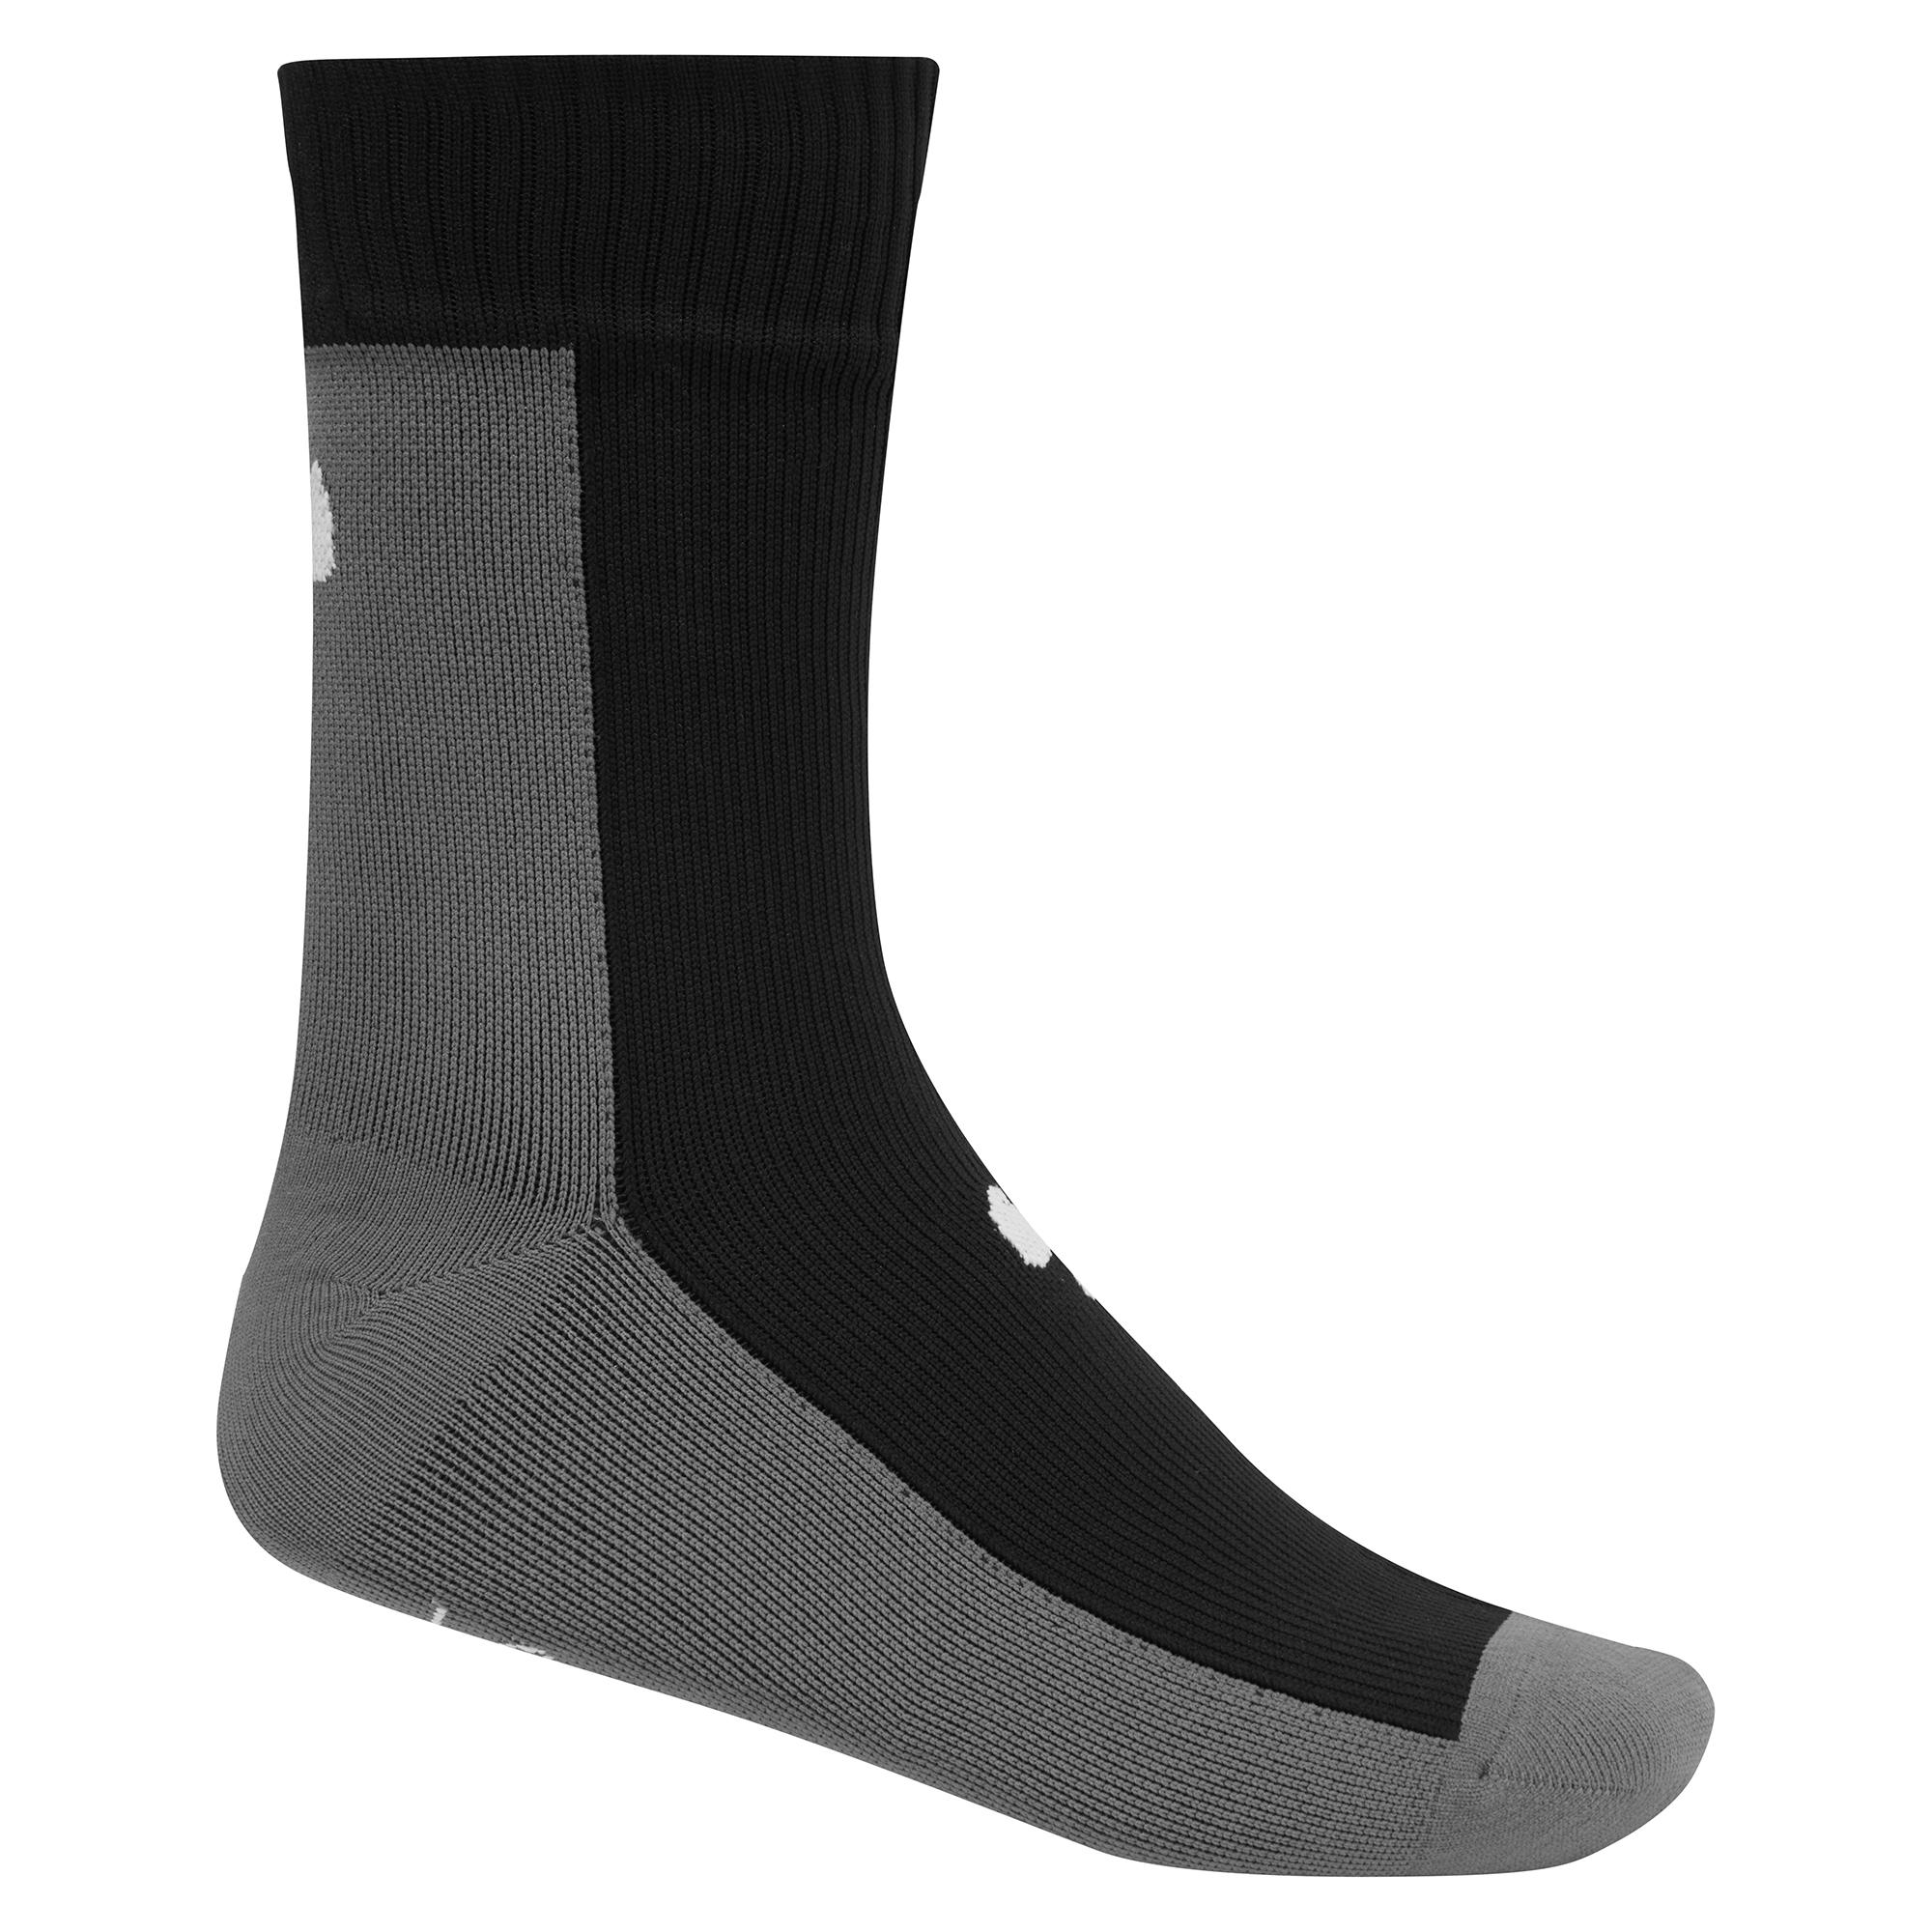 Nukeproof Waterproof Sock - Black/grey